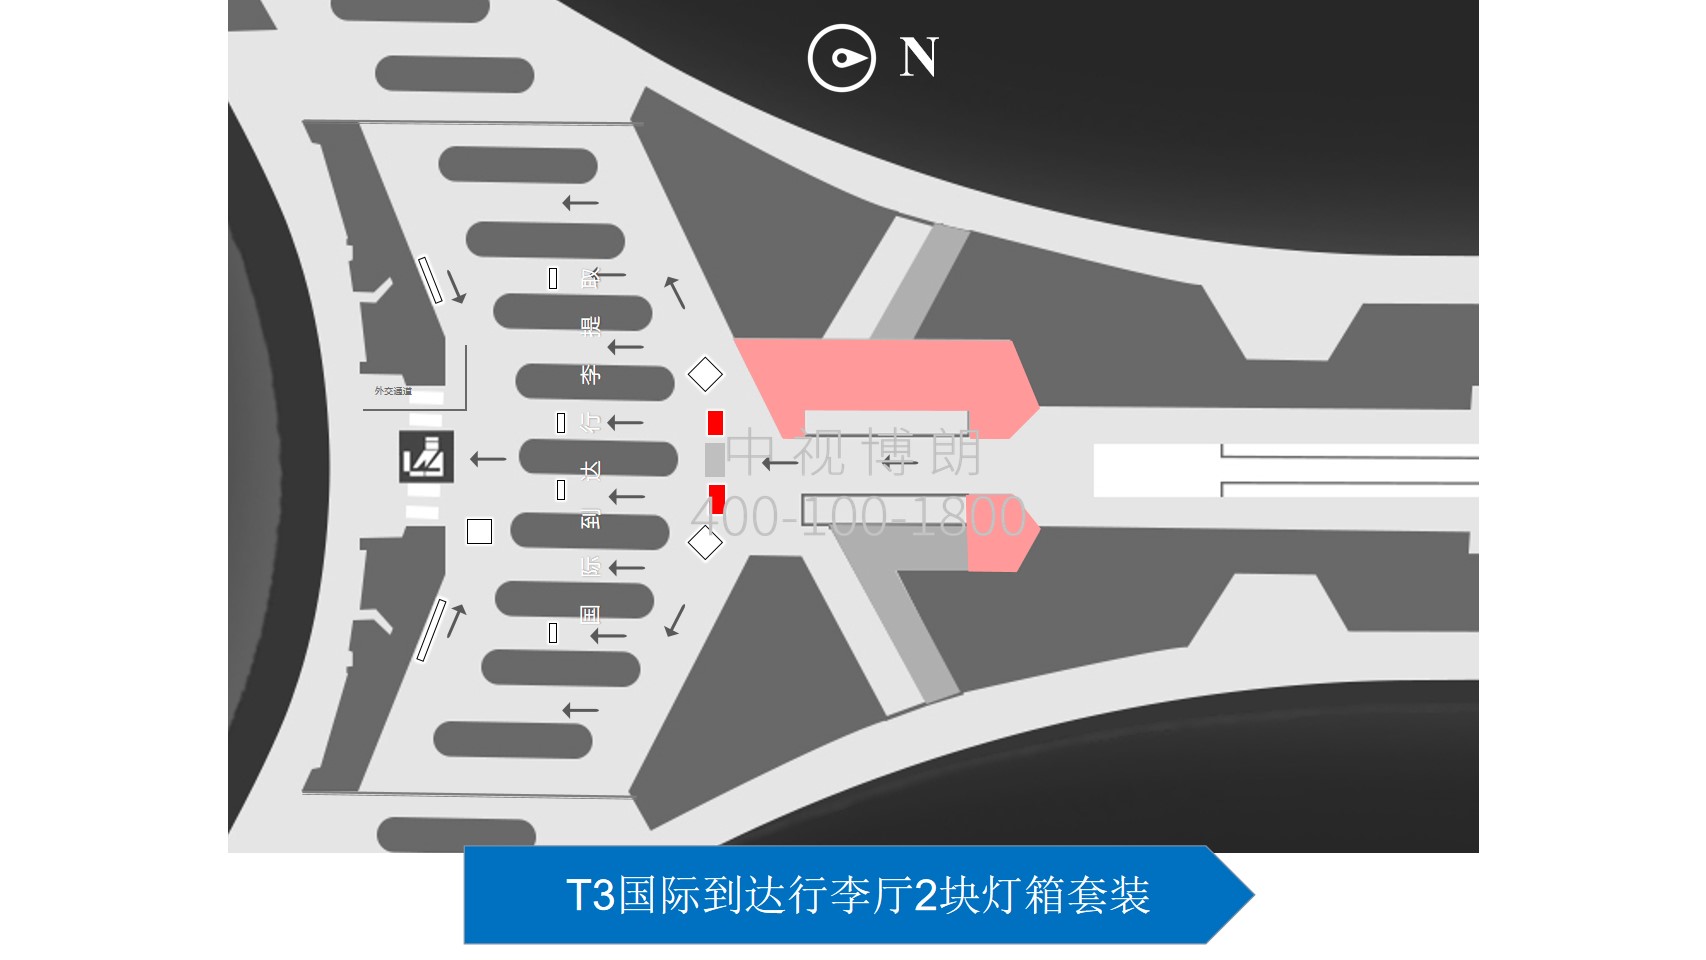 北京首都机场广告-T3 International Arrival Luggage Hall Light Box Set位置图